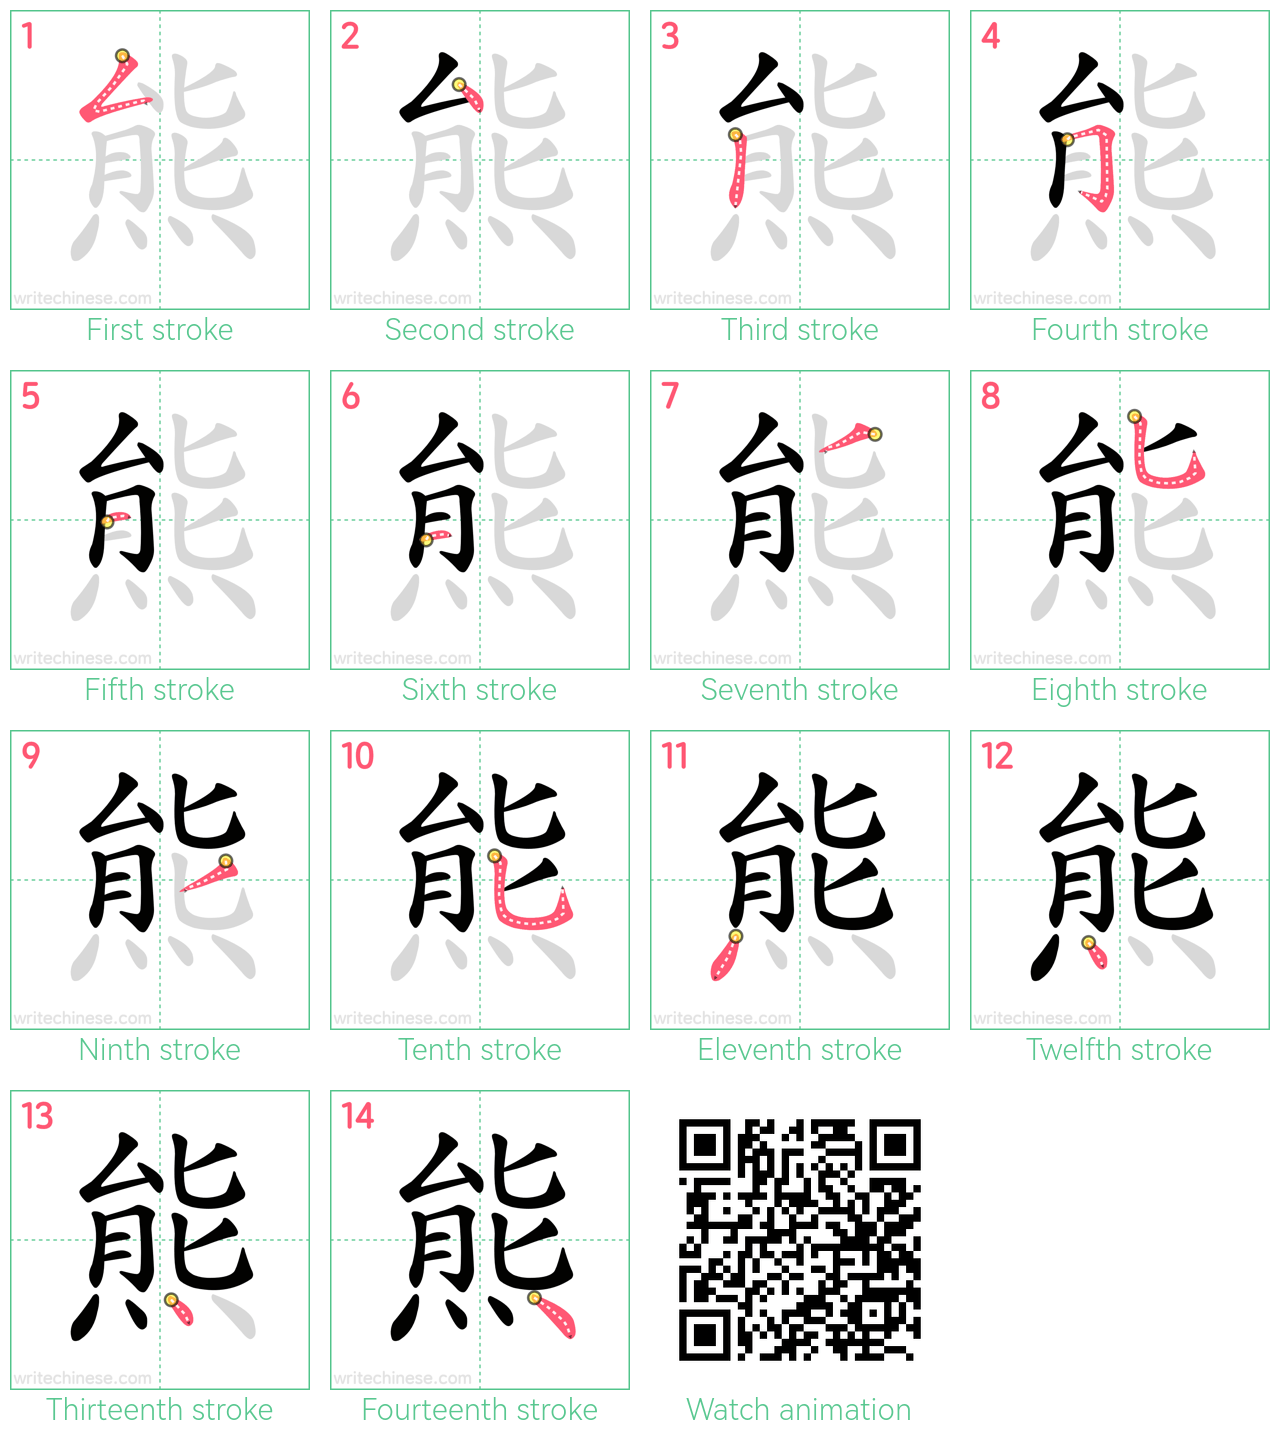 熊 step-by-step stroke order diagrams